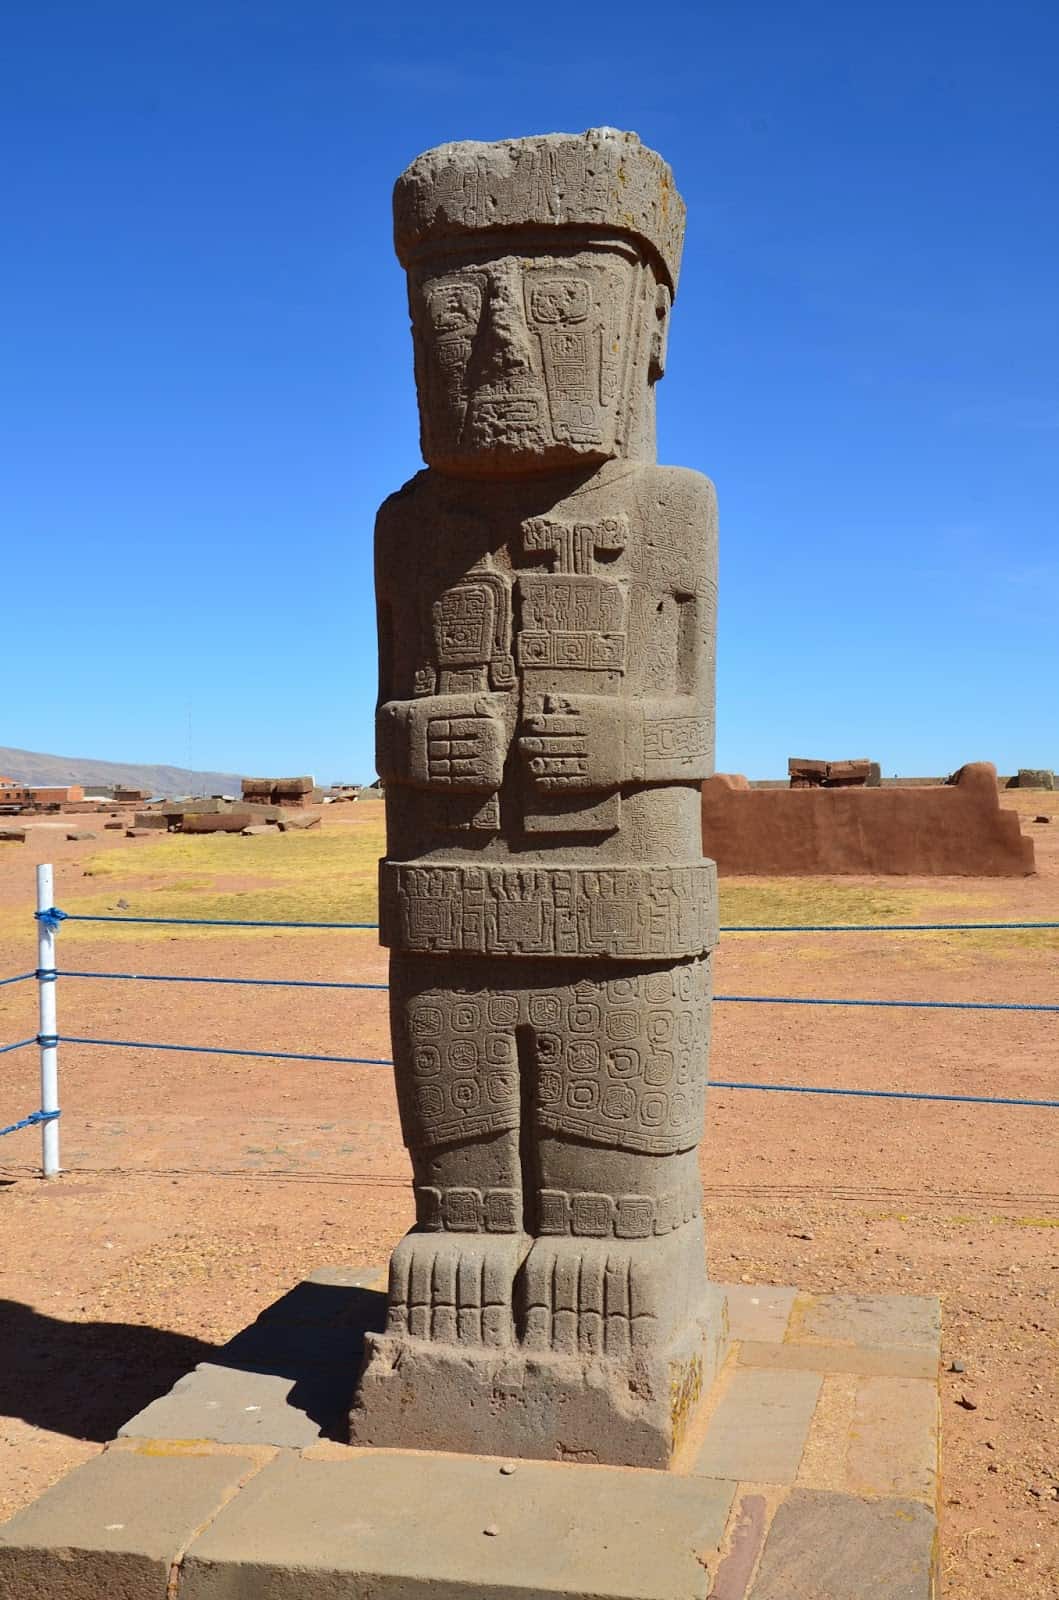 Monolith at Tiwanaku, Bolivia